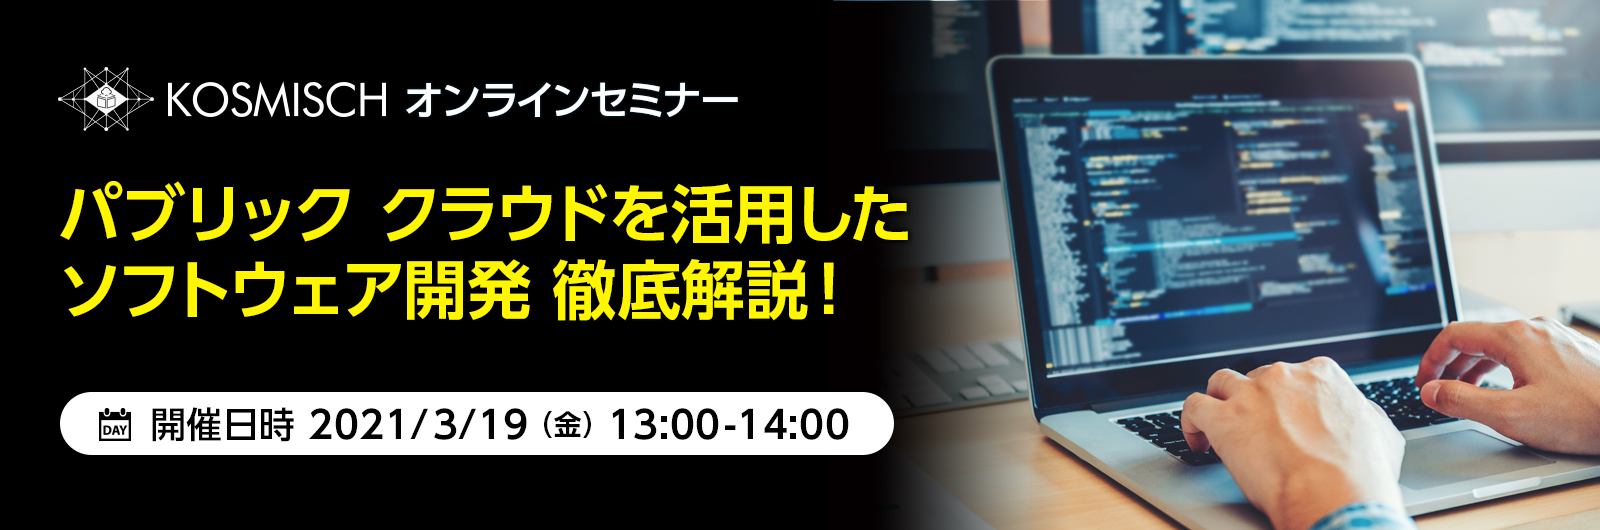 KOSMISCH、パブリッククラウドを活用したソフトウェア開発を支援するオンラインセミナーを日本マイクロソフトと共催－2021年3月19日(金)